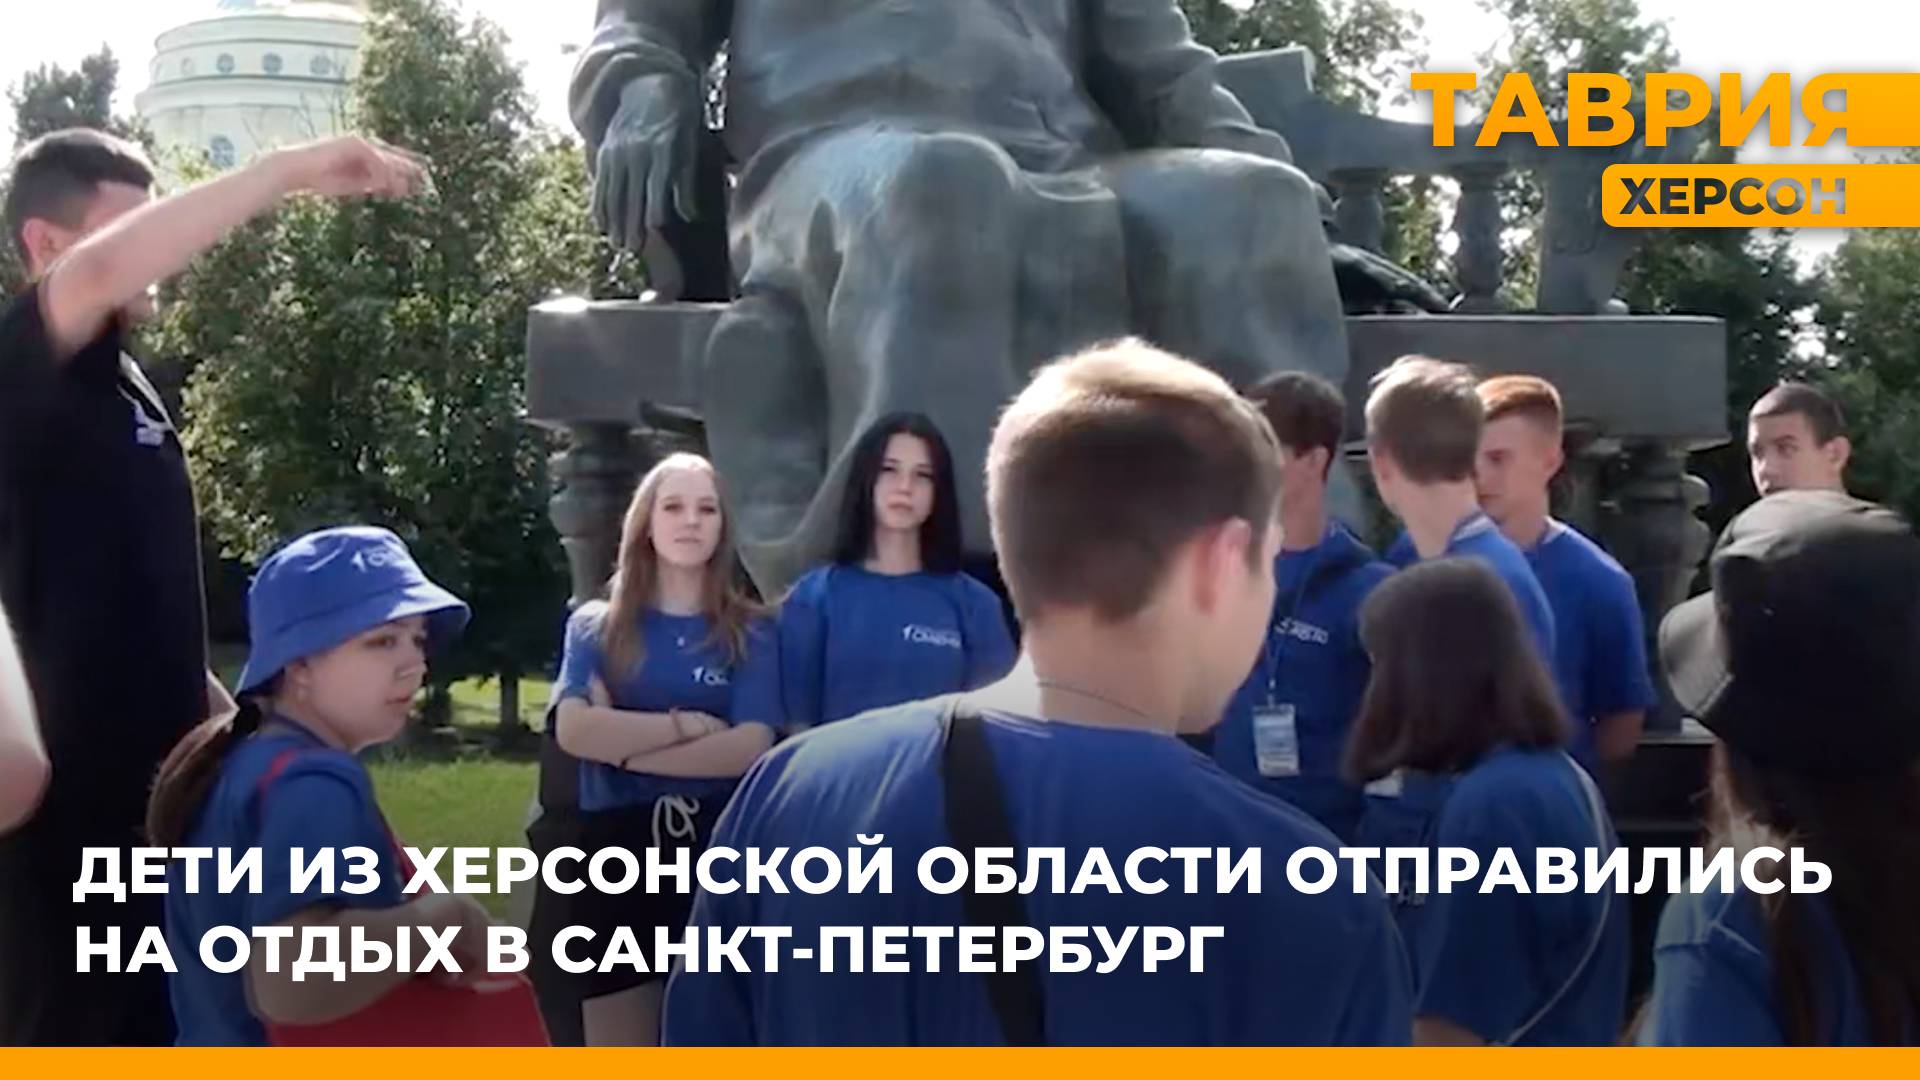 Дети из Херсонской области отправились на отдых в Санкт-Петербург